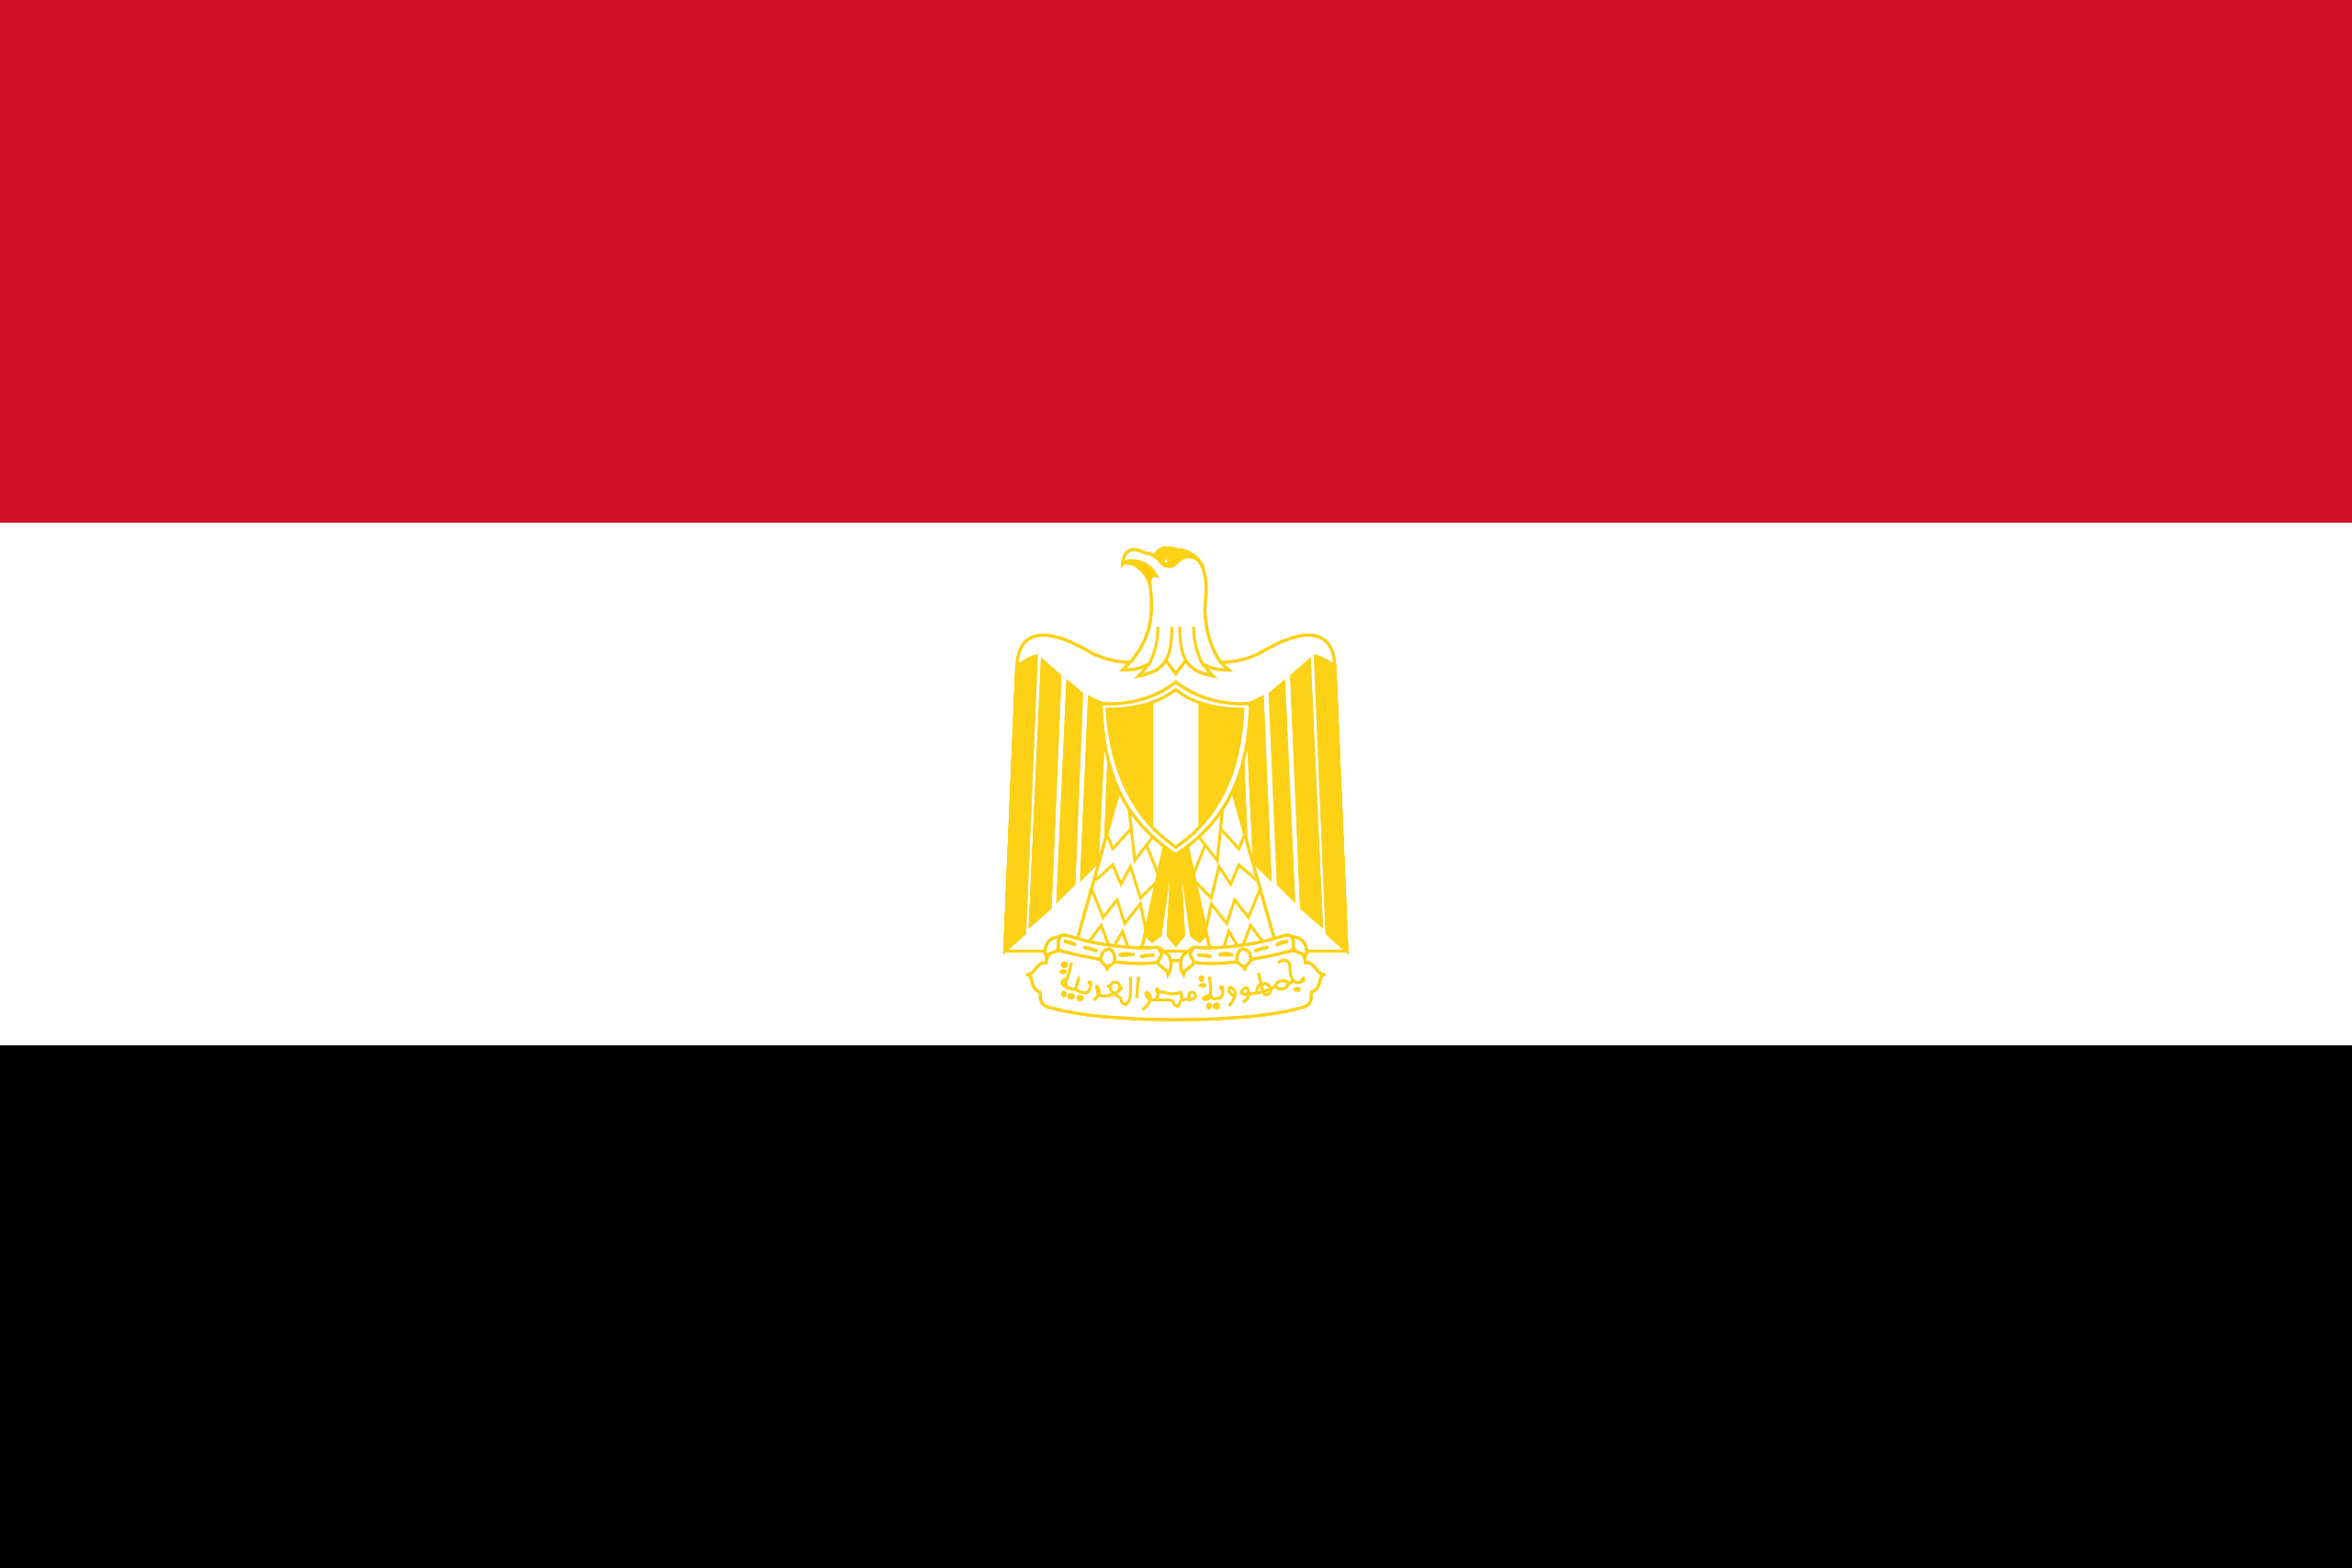 صور علم مصر , خلفيات علم مصر للفيسبوك